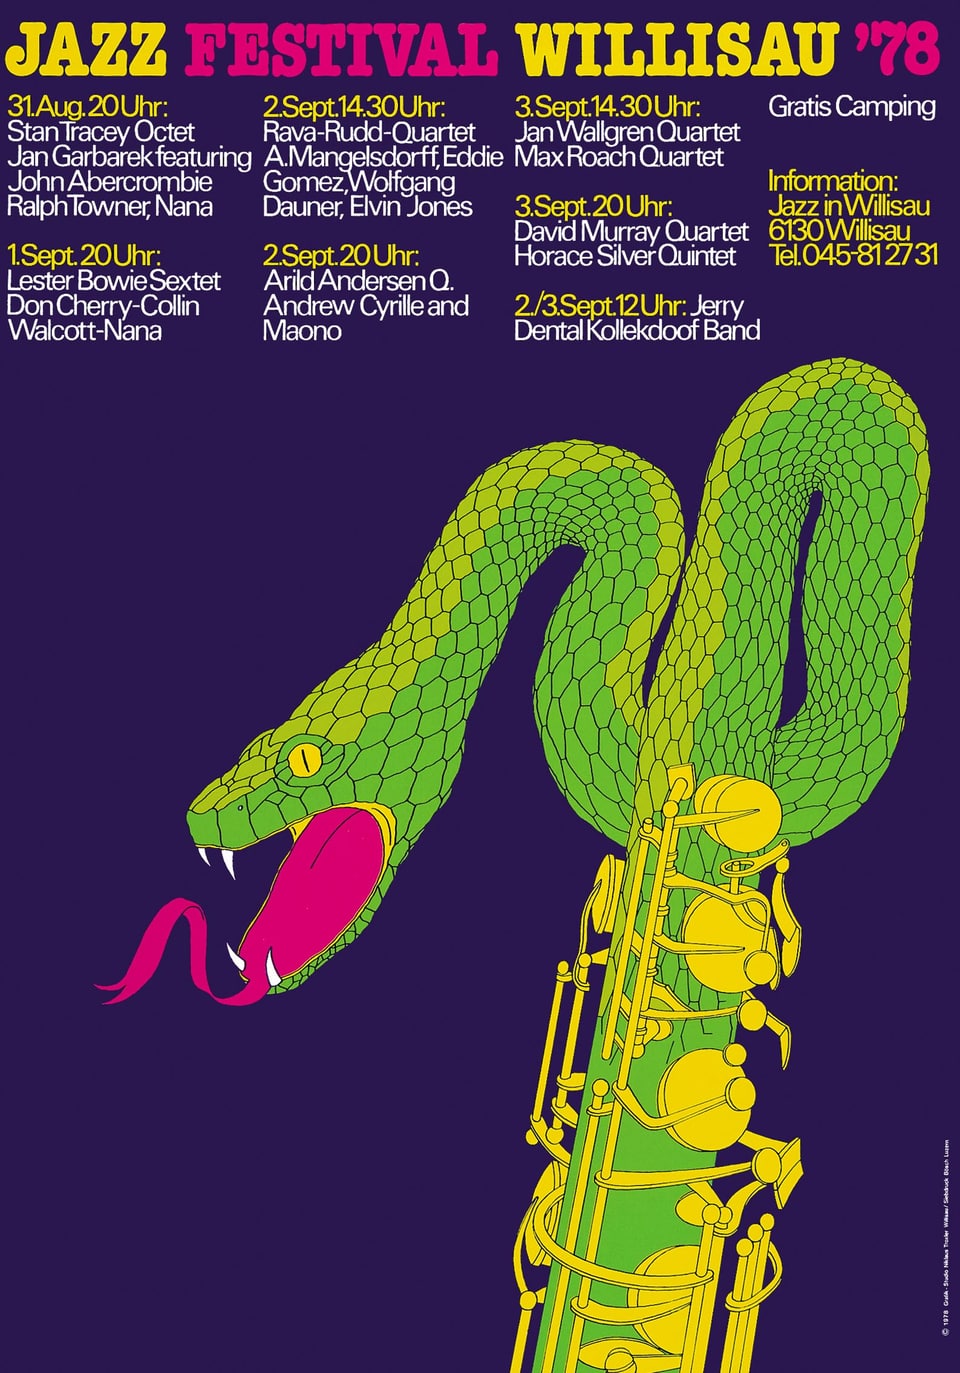 Festivalplakat für das Jazz Festival Willisau 1978.